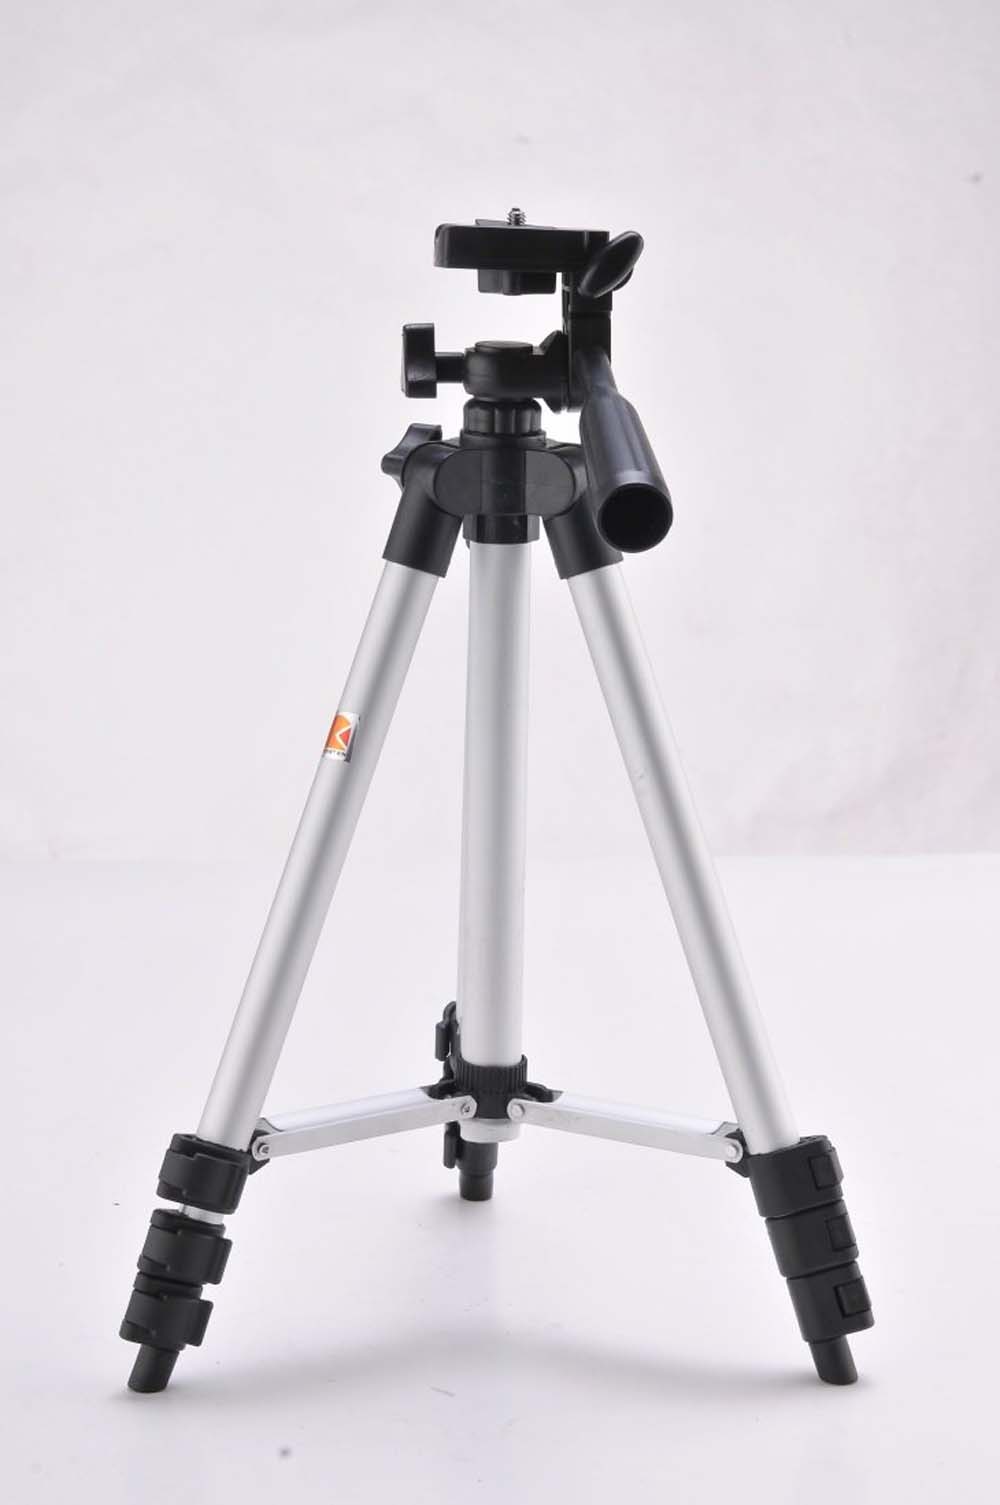 Treppiede per fotocamera - Inc. custodia per il trasporto, 48 - 130 cm, max. 3 kg